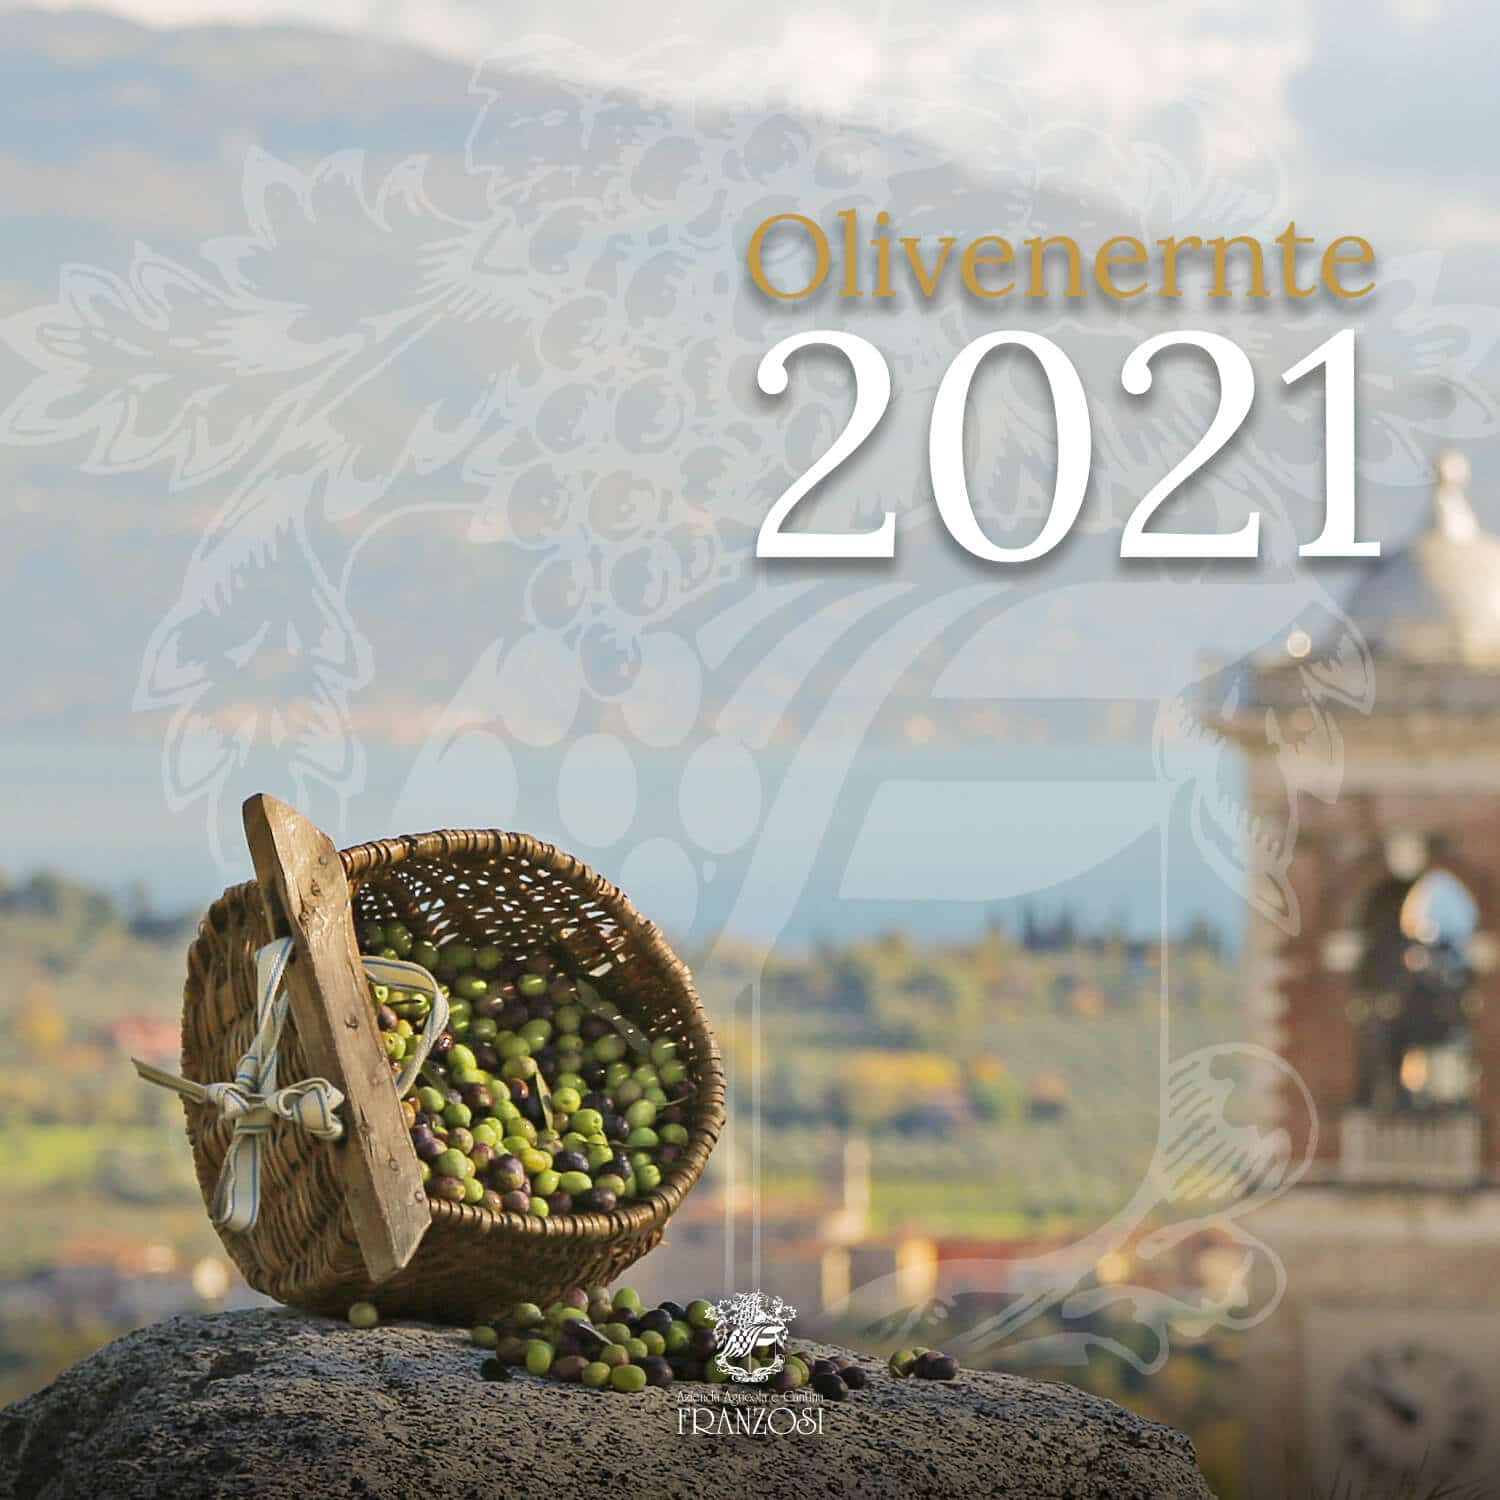 Olivenernte in Valtènesi 2021